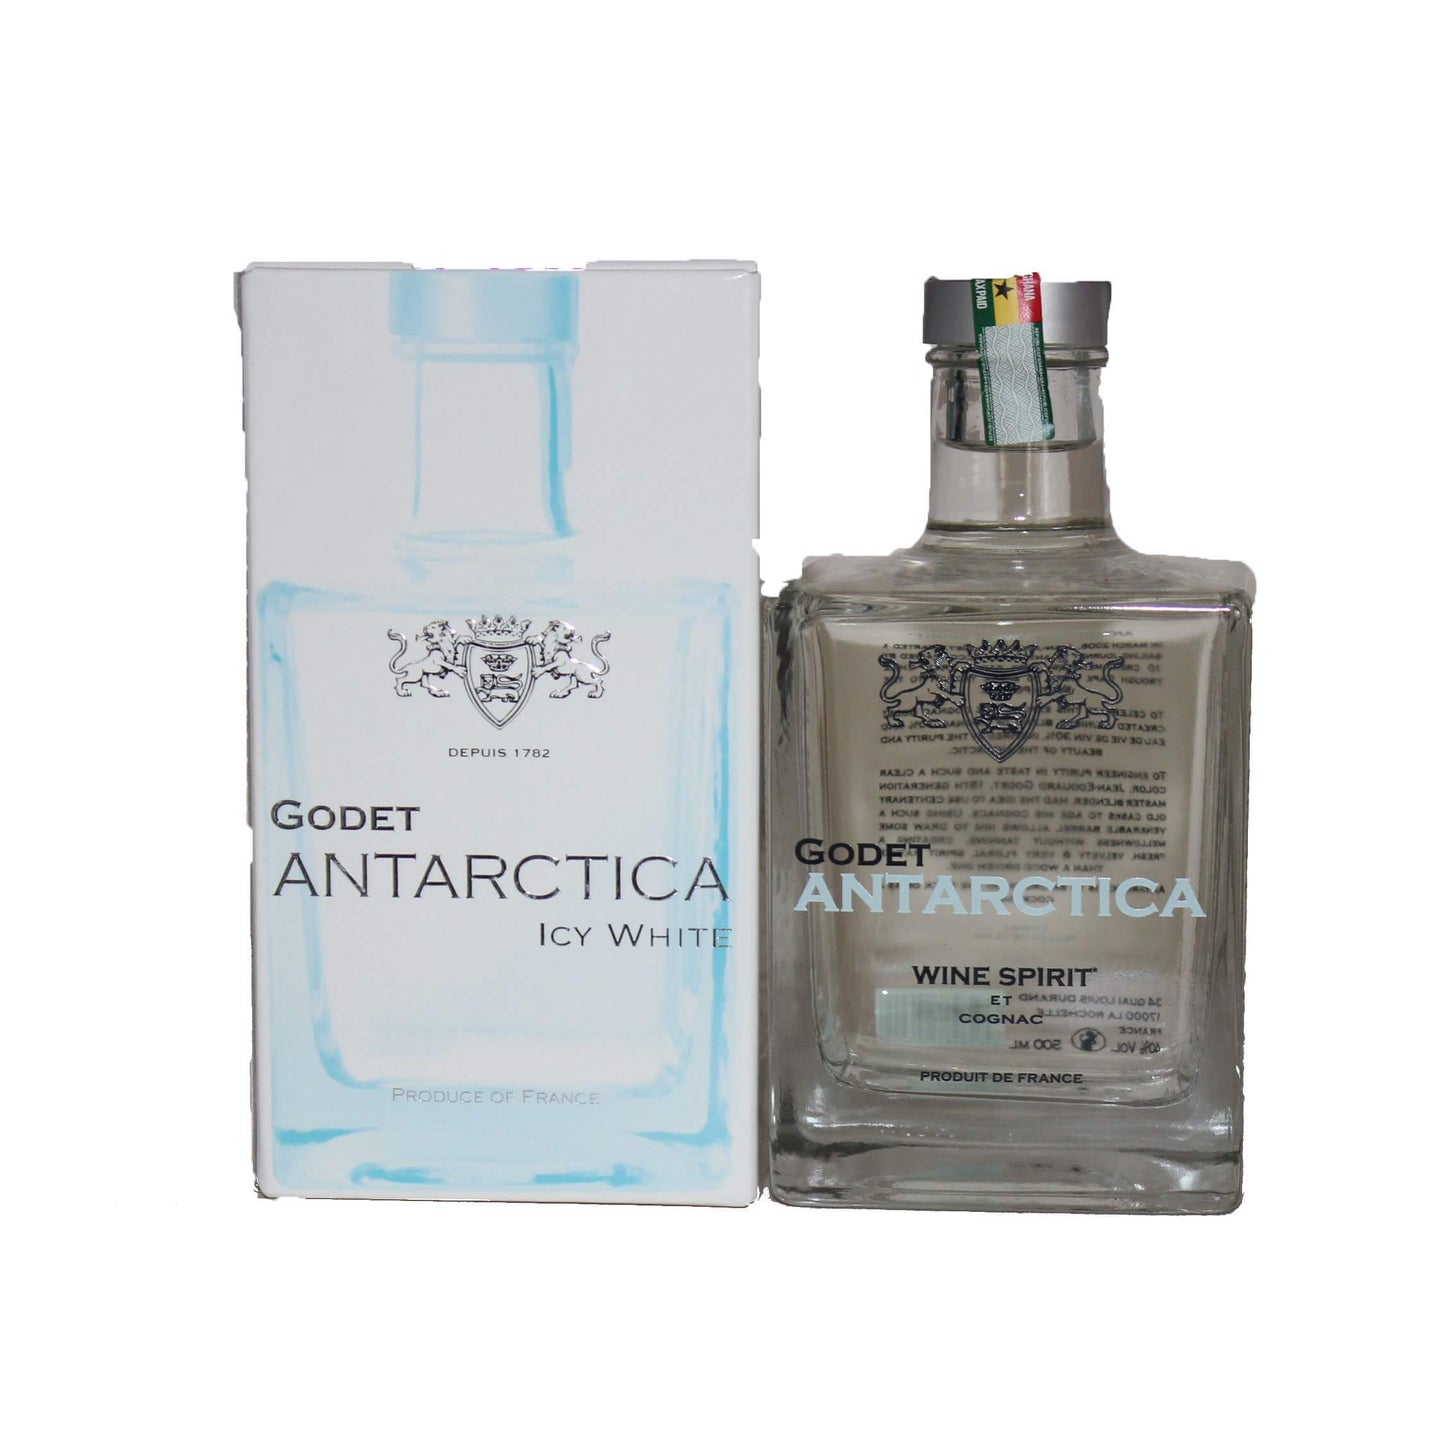 Godet Antarctica ice